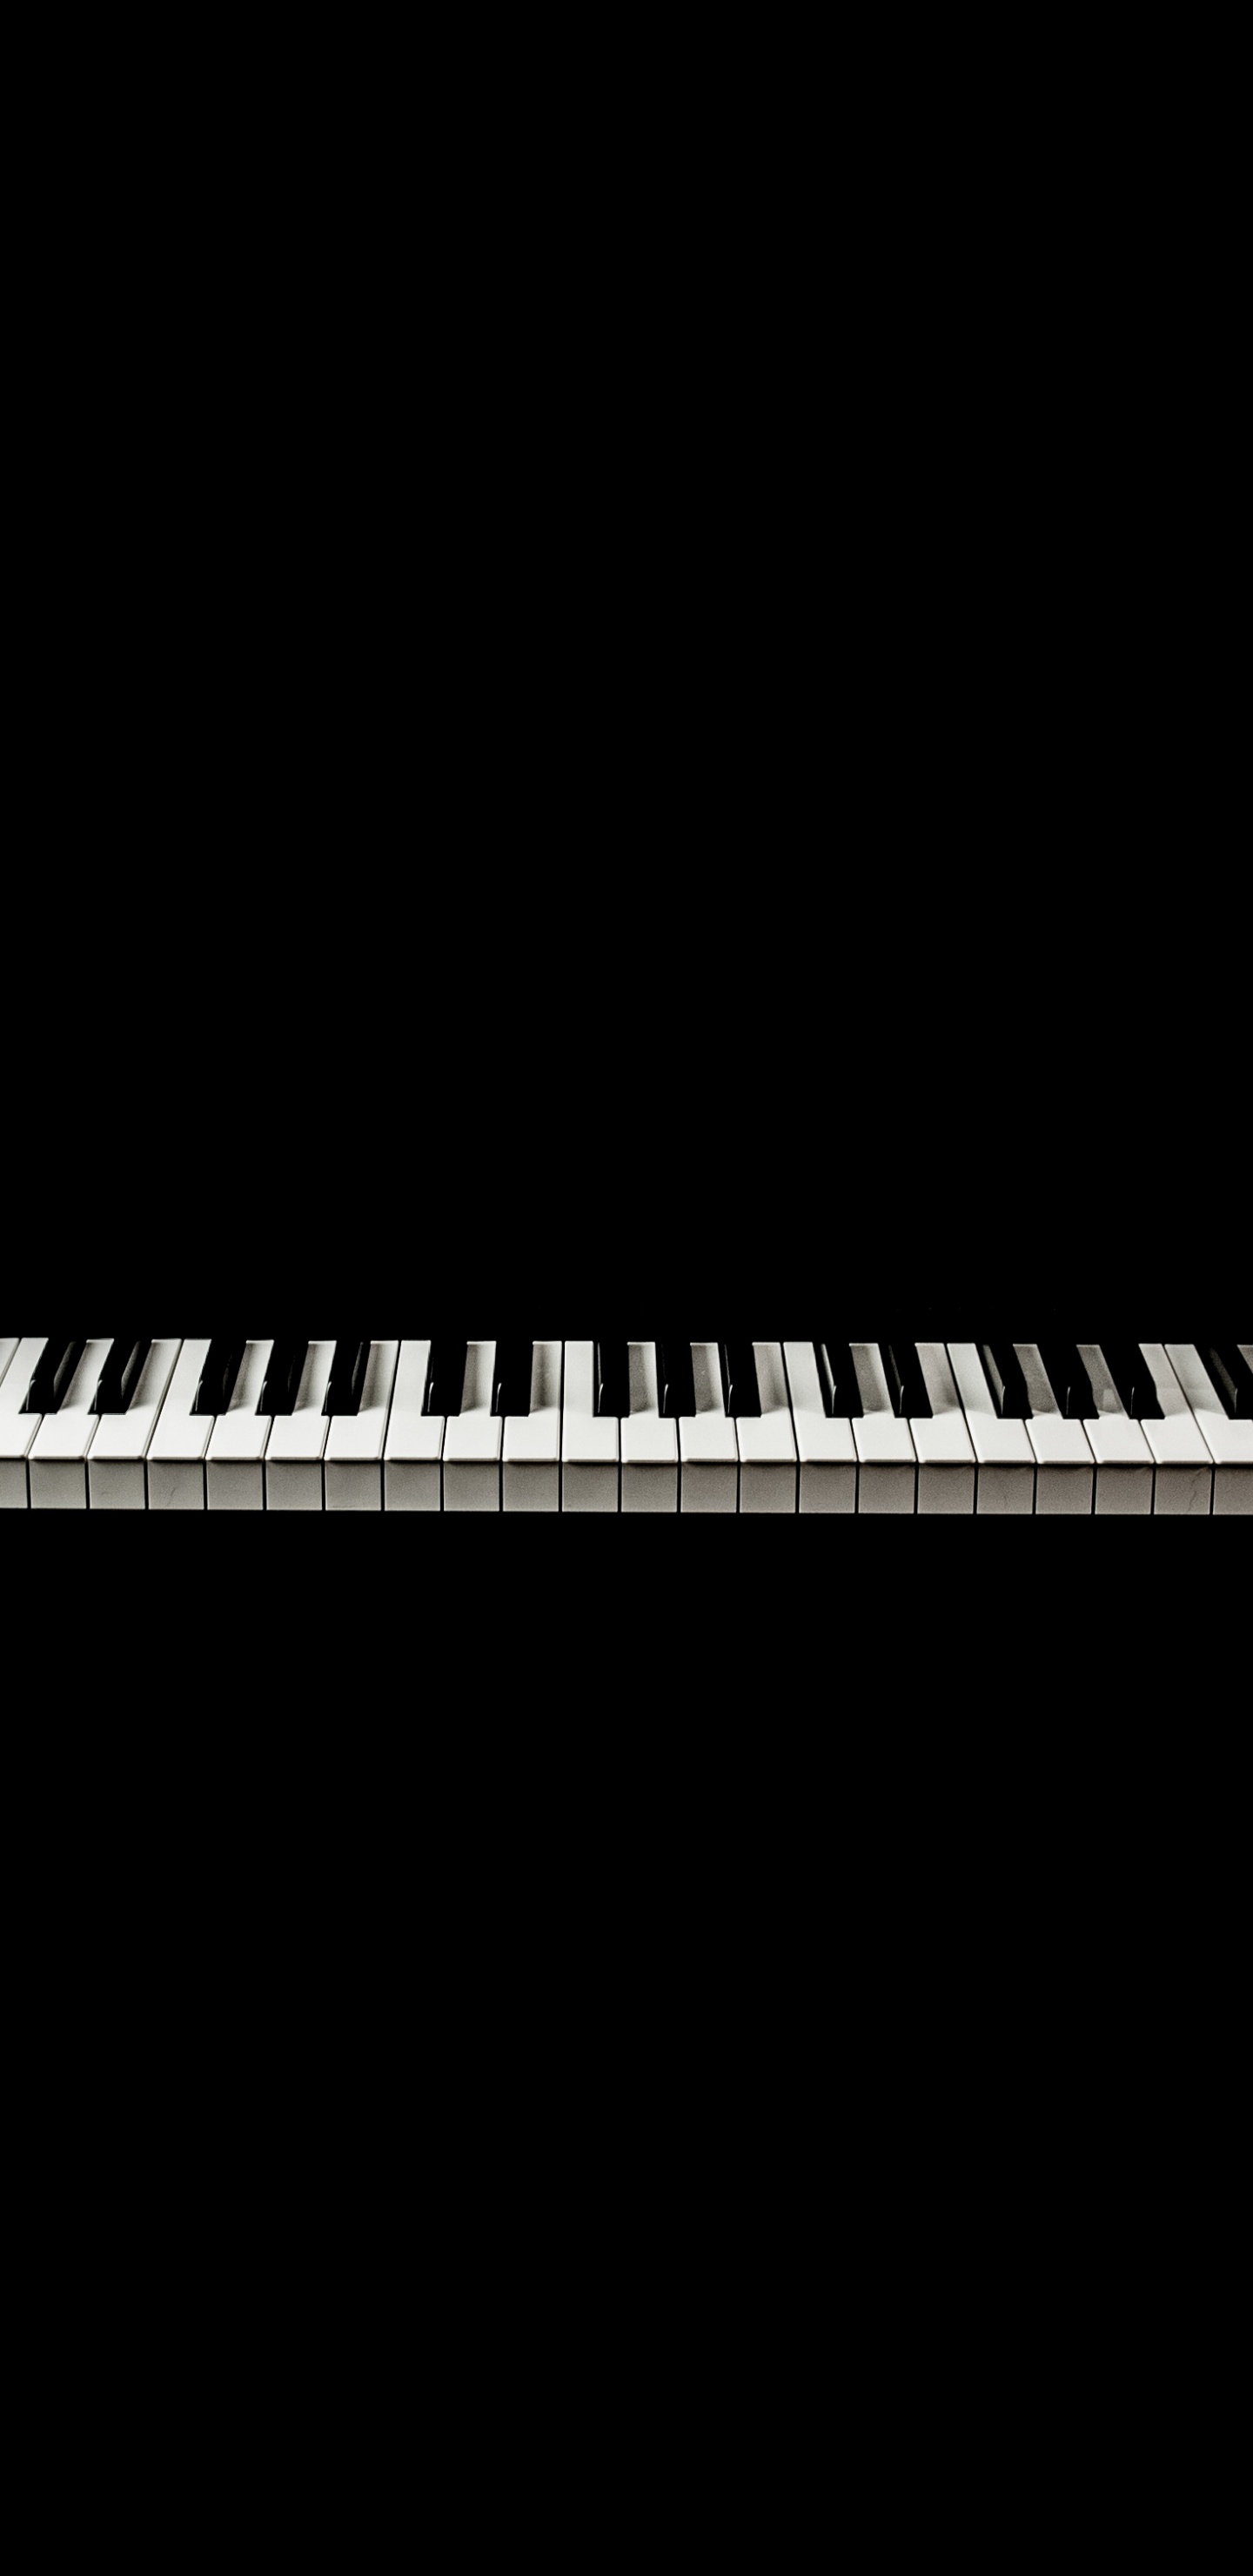 Teclado Musical, Piano Digital, Piano Eléctrico, Piano, Teclado. Wallpaper in 1440x2960 Resolution